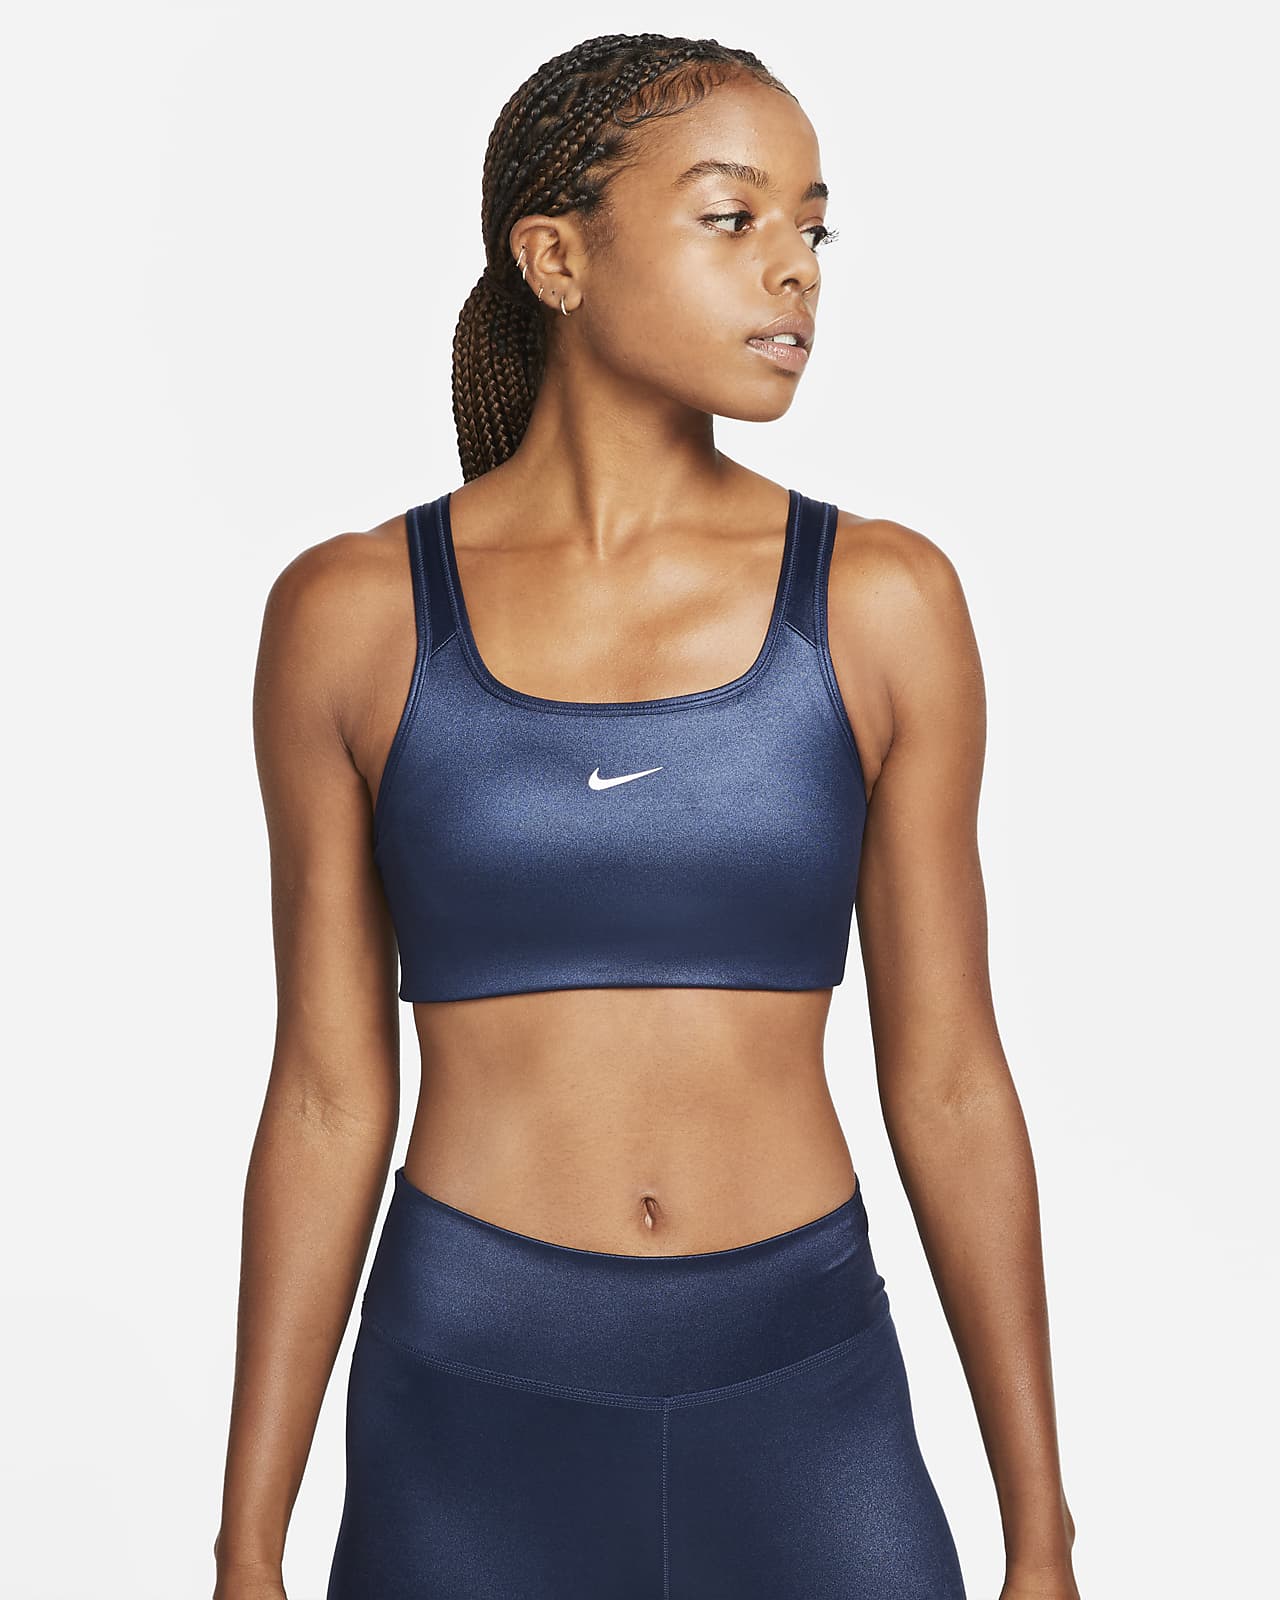 Women's Nike Swoosh Sports Bras. Nike DK